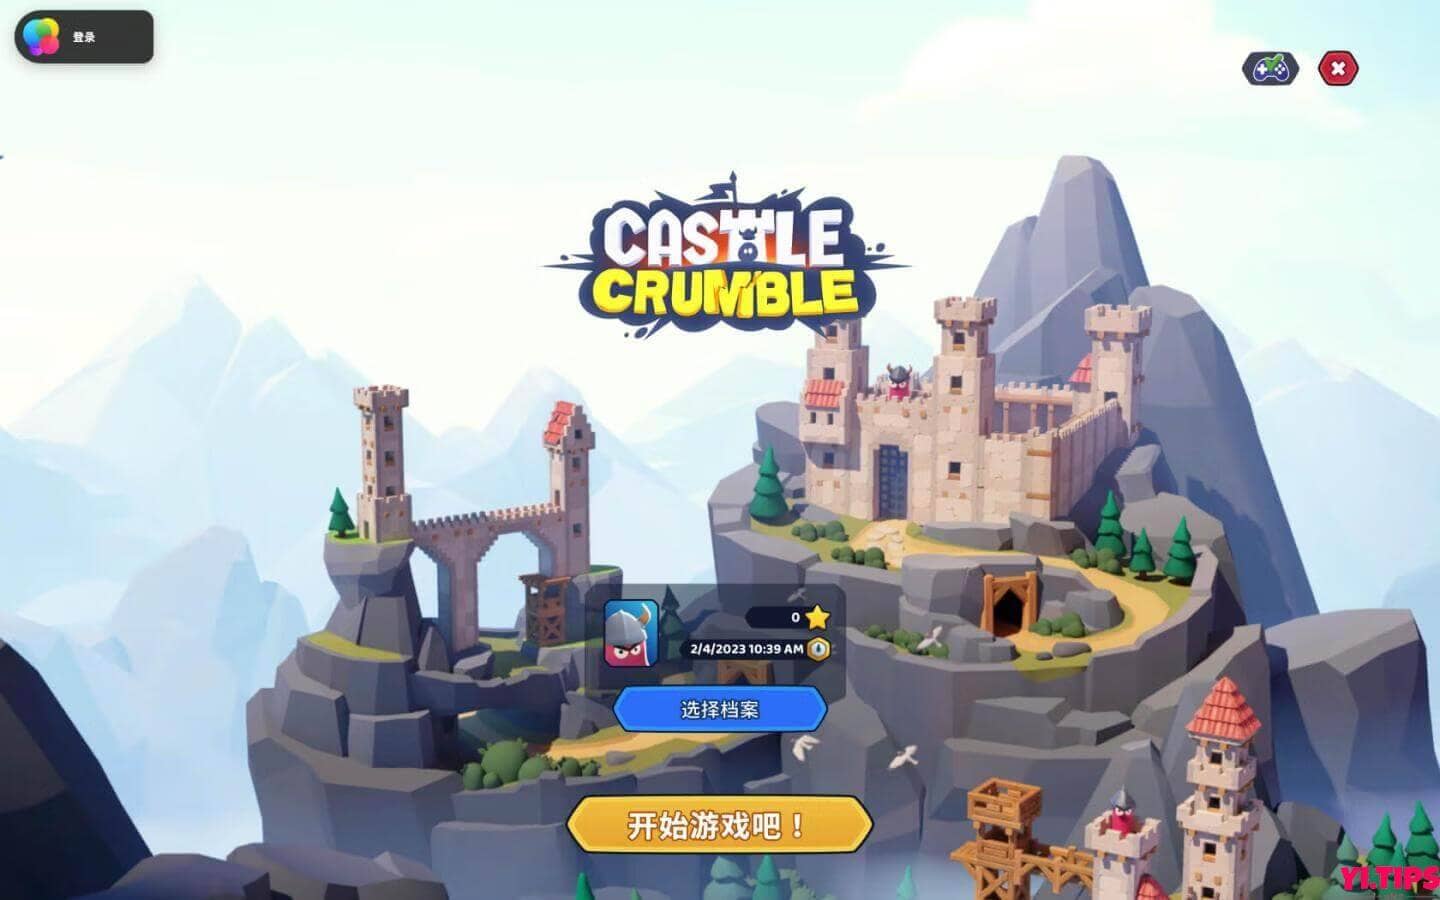 粉碎城堡 Castle Crumble For Mac V1.0.2 塔防策略游戏 -Mac游戏免费下载 - Yi.Tips-Yi.Tips